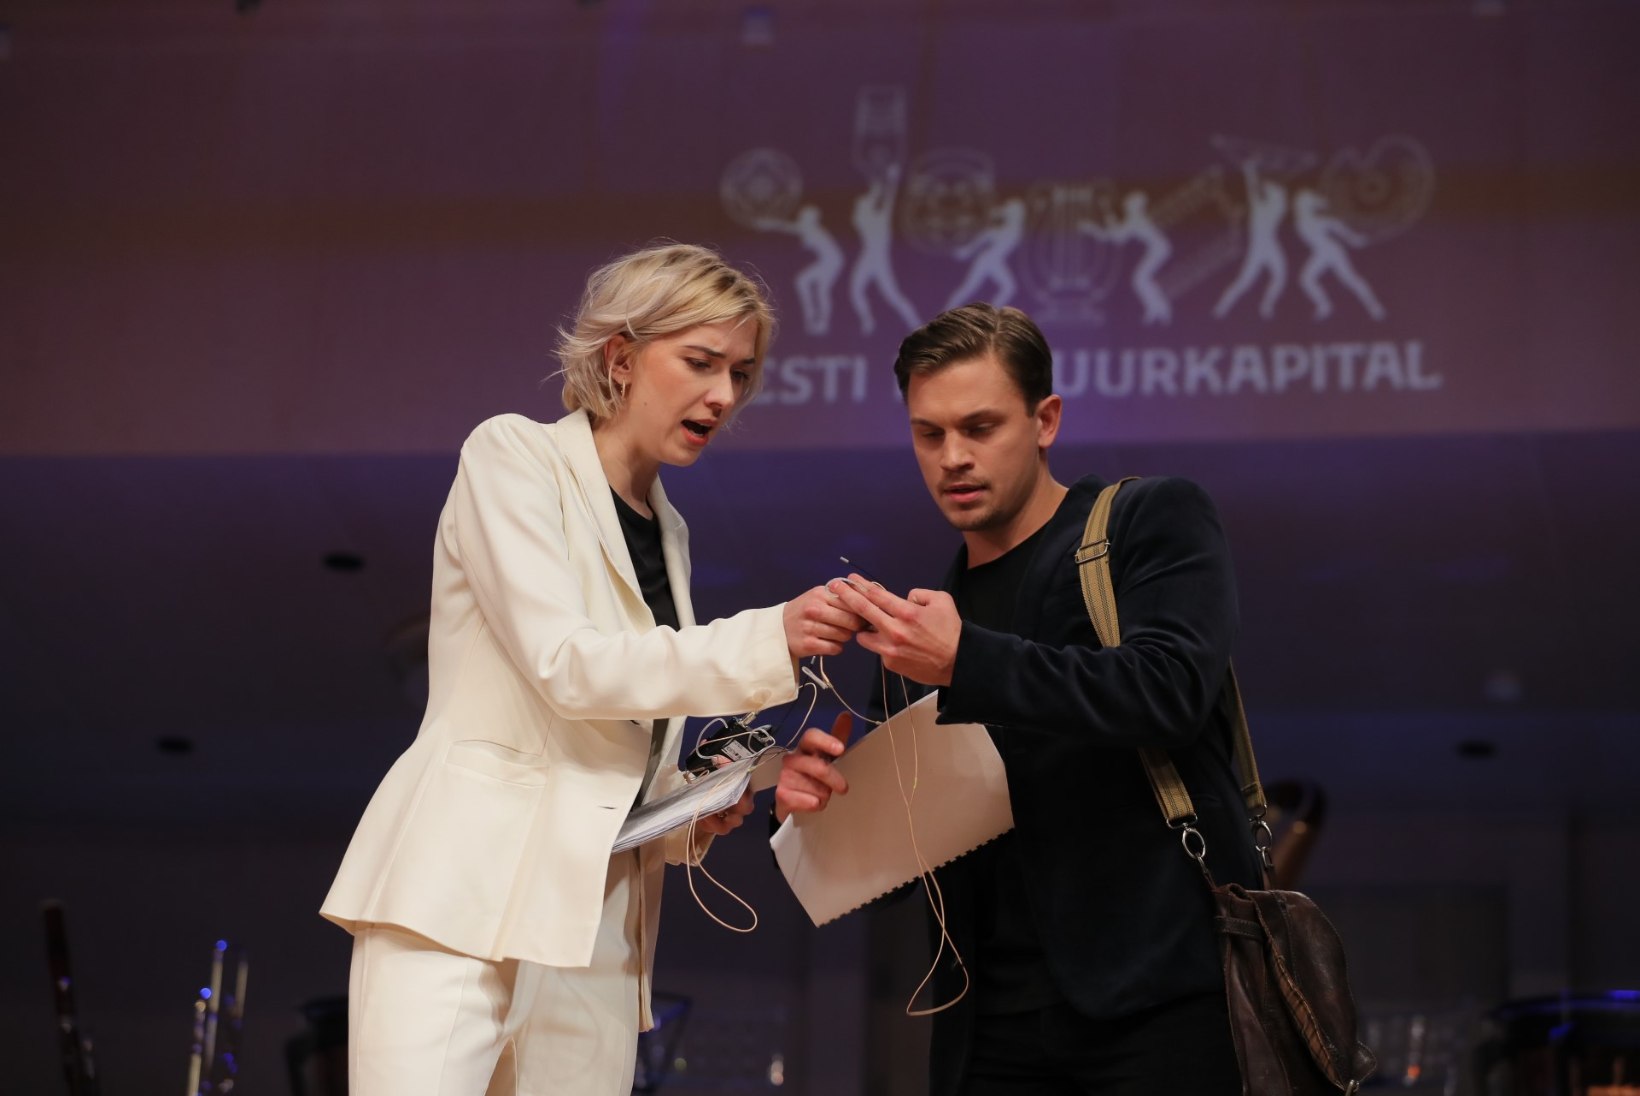 FOTOD | Eesti kultuurkapital jagas aastapreemiaid